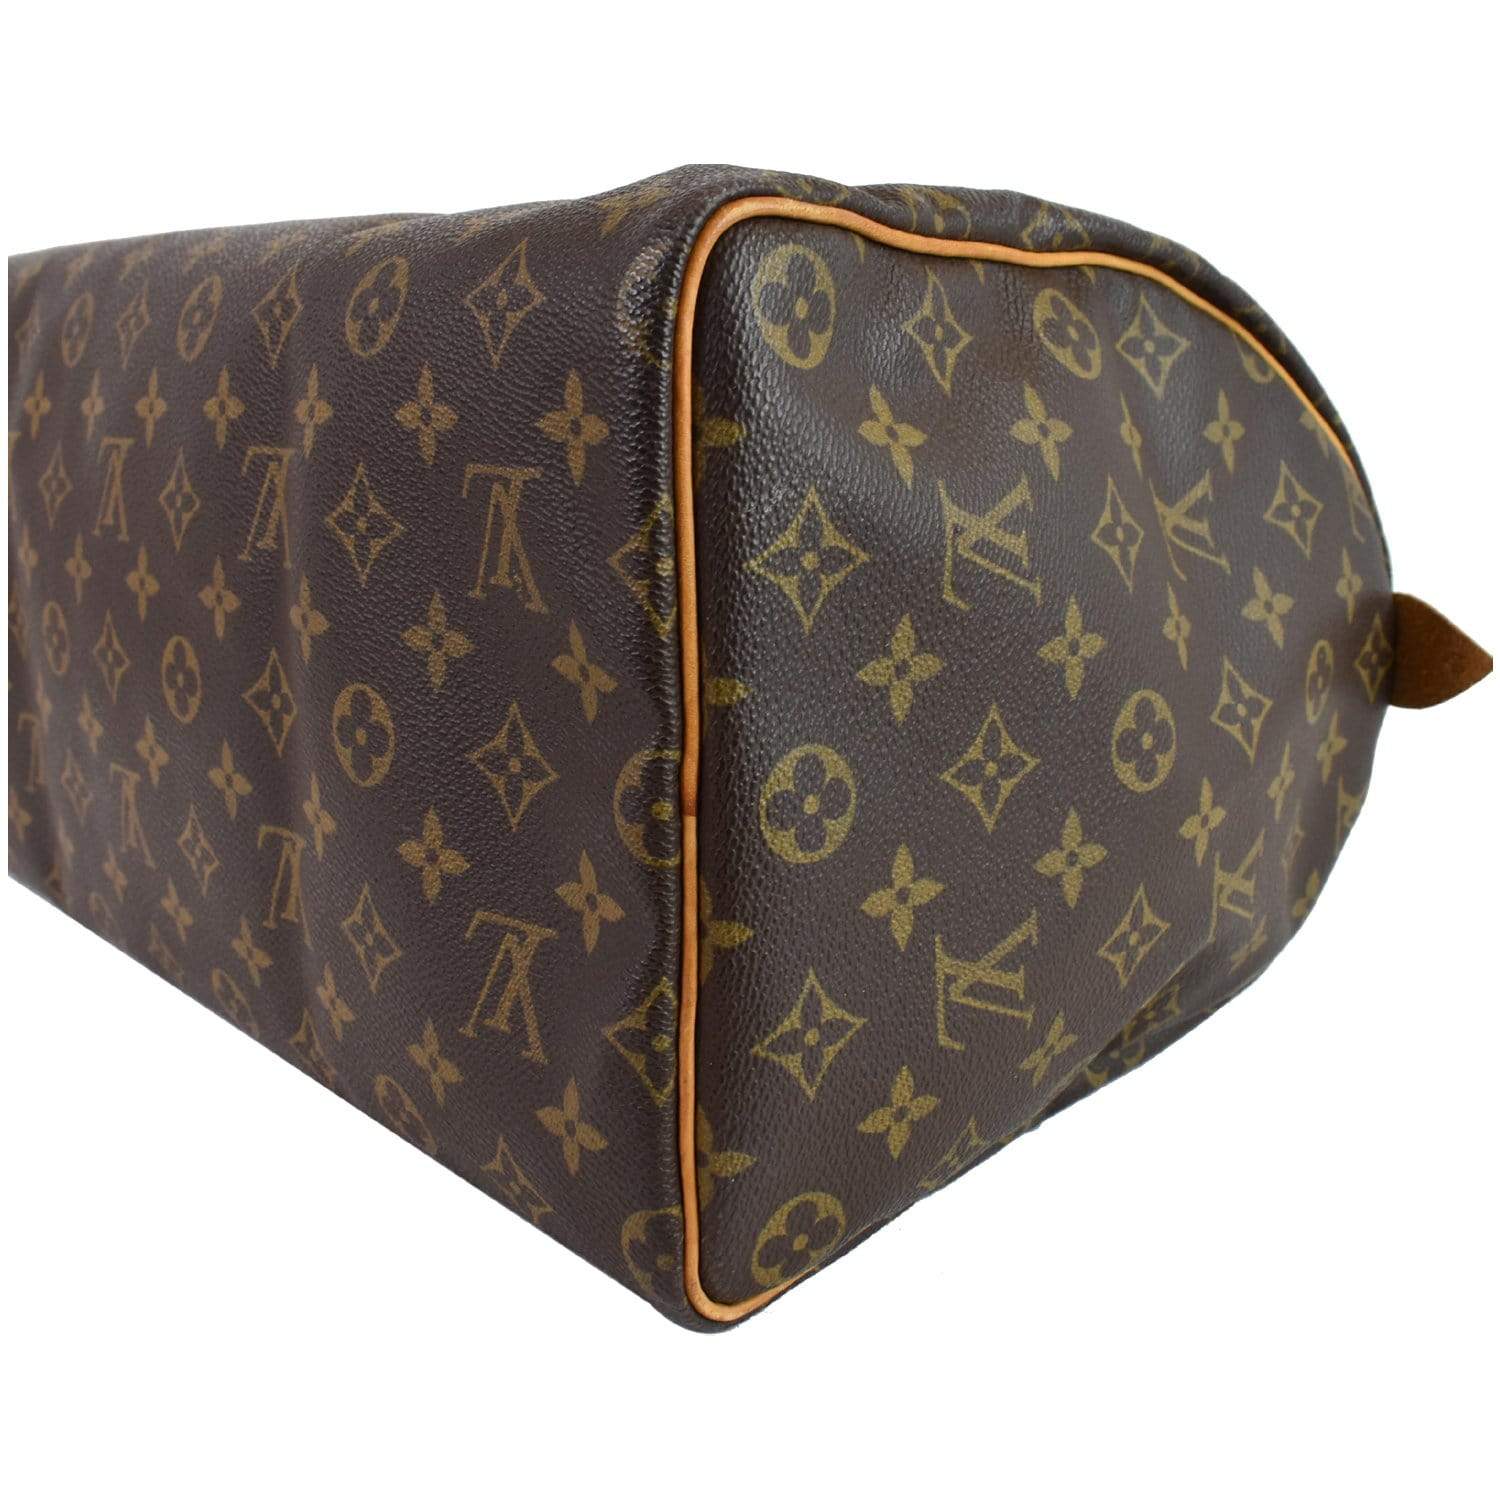 Louis Vuitton Speedy 40 Monogram bag - Gaja Refashion